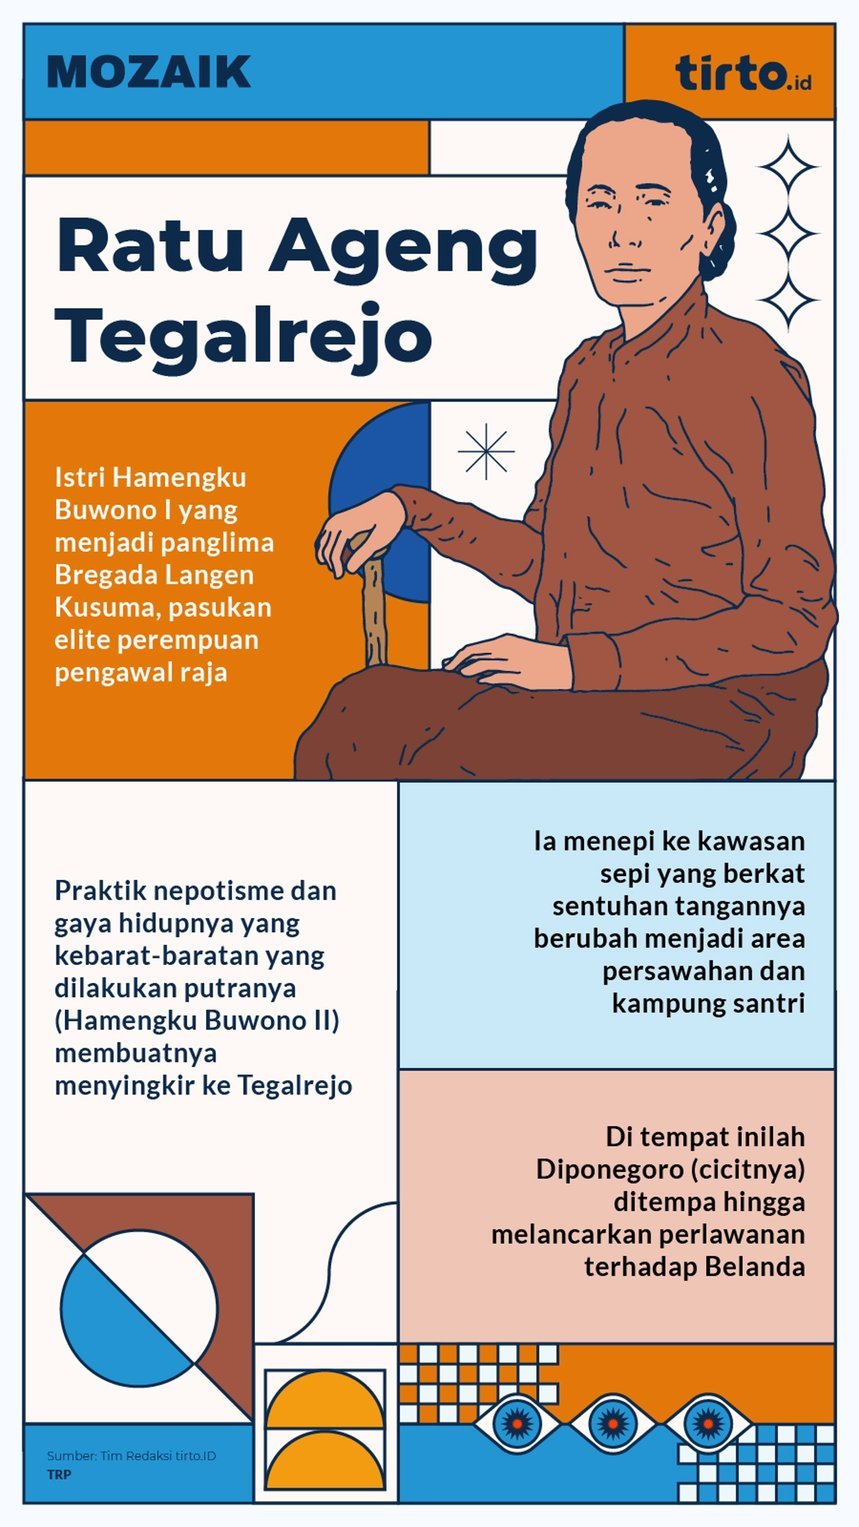 Infografik mozaik Ratu Agung Tegalrejo